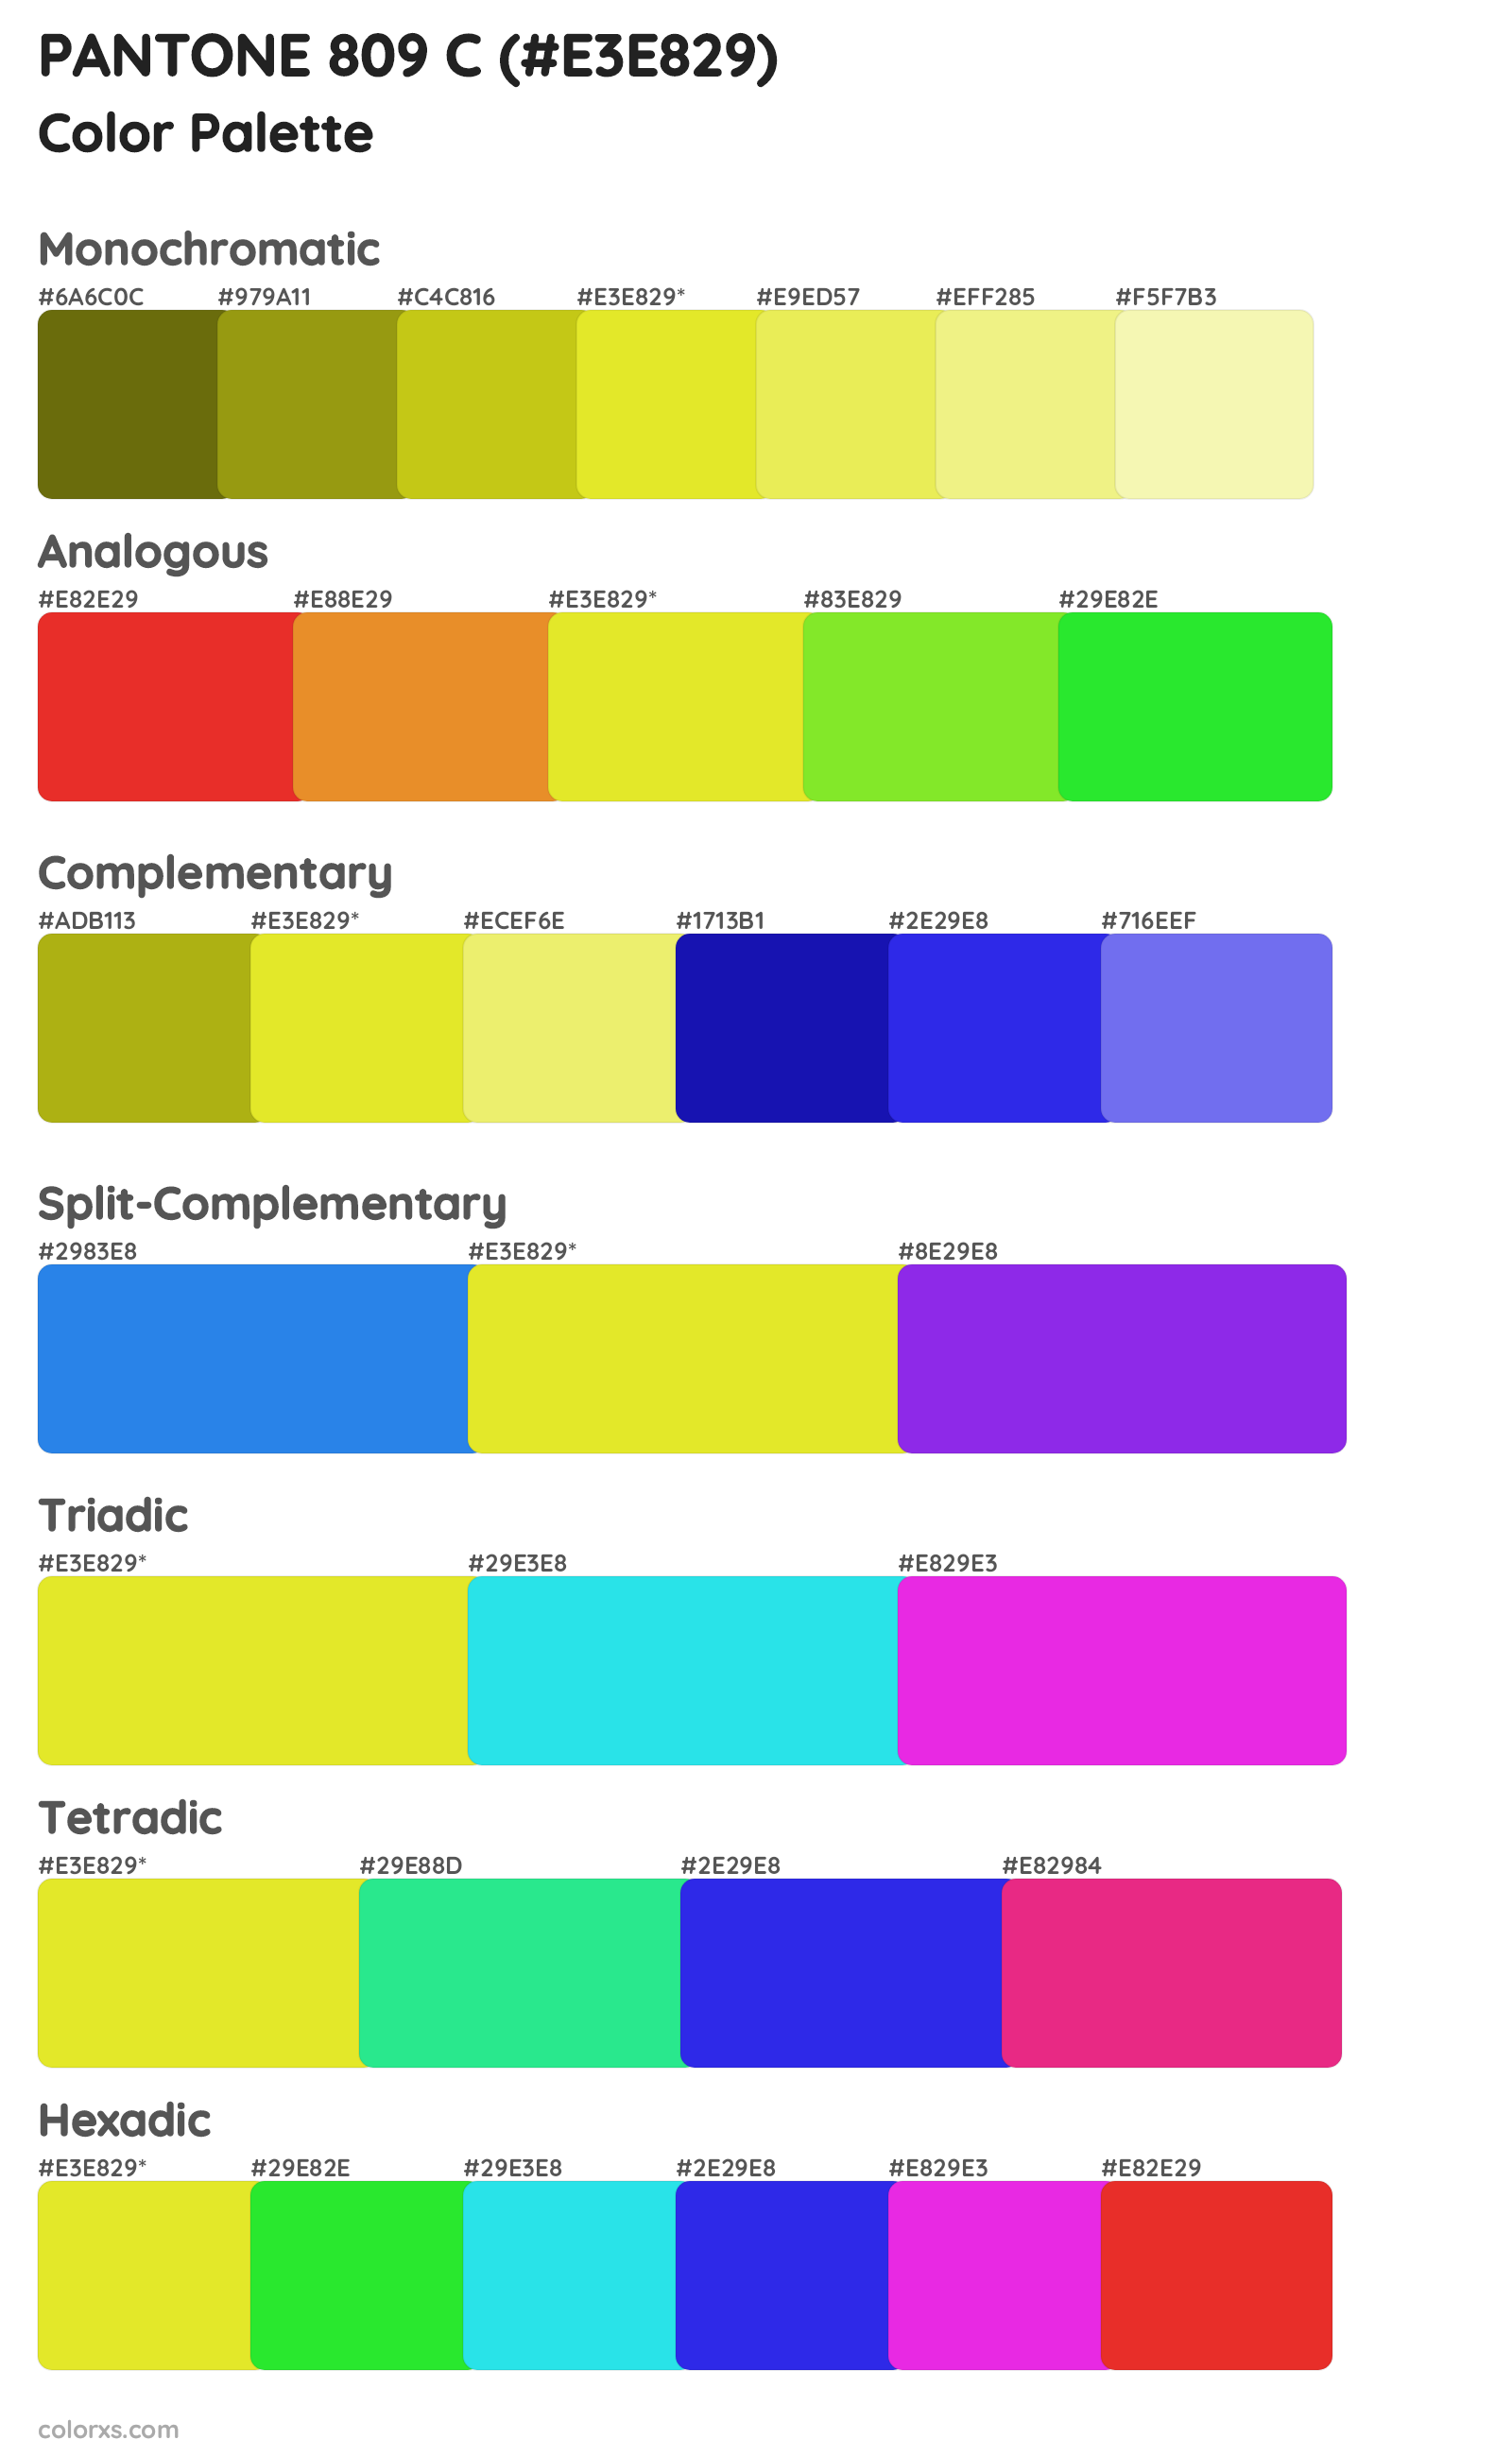 PANTONE 809 C Color Scheme Palettes